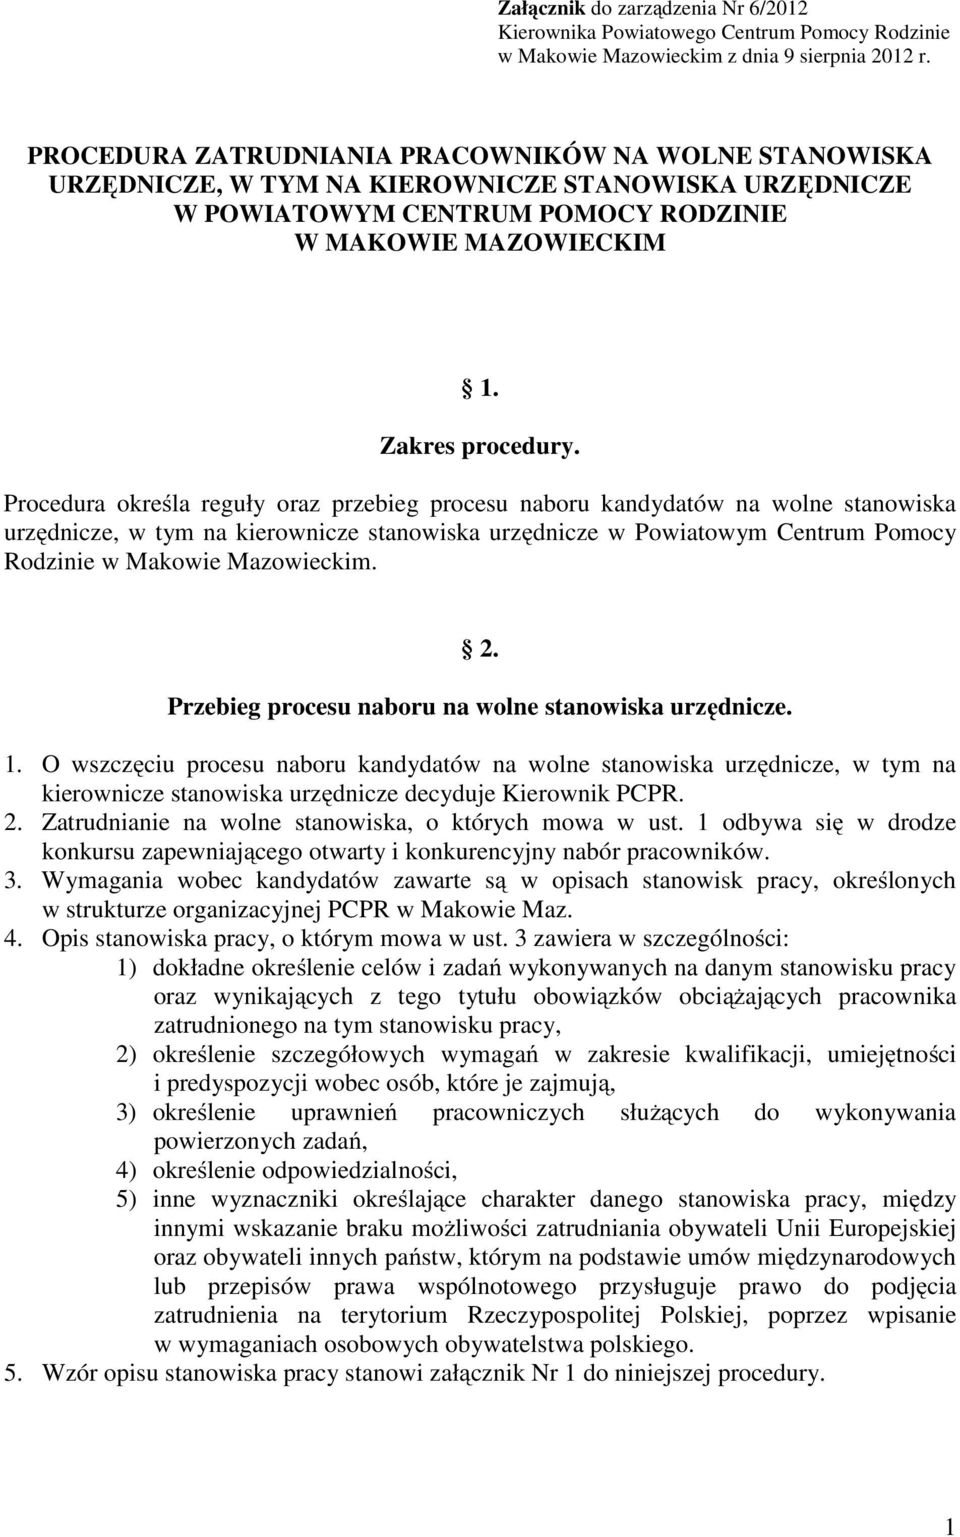 Procedura określa reguły oraz przebieg procesu naboru kandydatów na wolne stanowiska urzędnicze, w tym na kierownicze stanowiska urzędnicze w Powiatowym Centrum Pomocy Rodzinie w Makowie Mazowieckim.